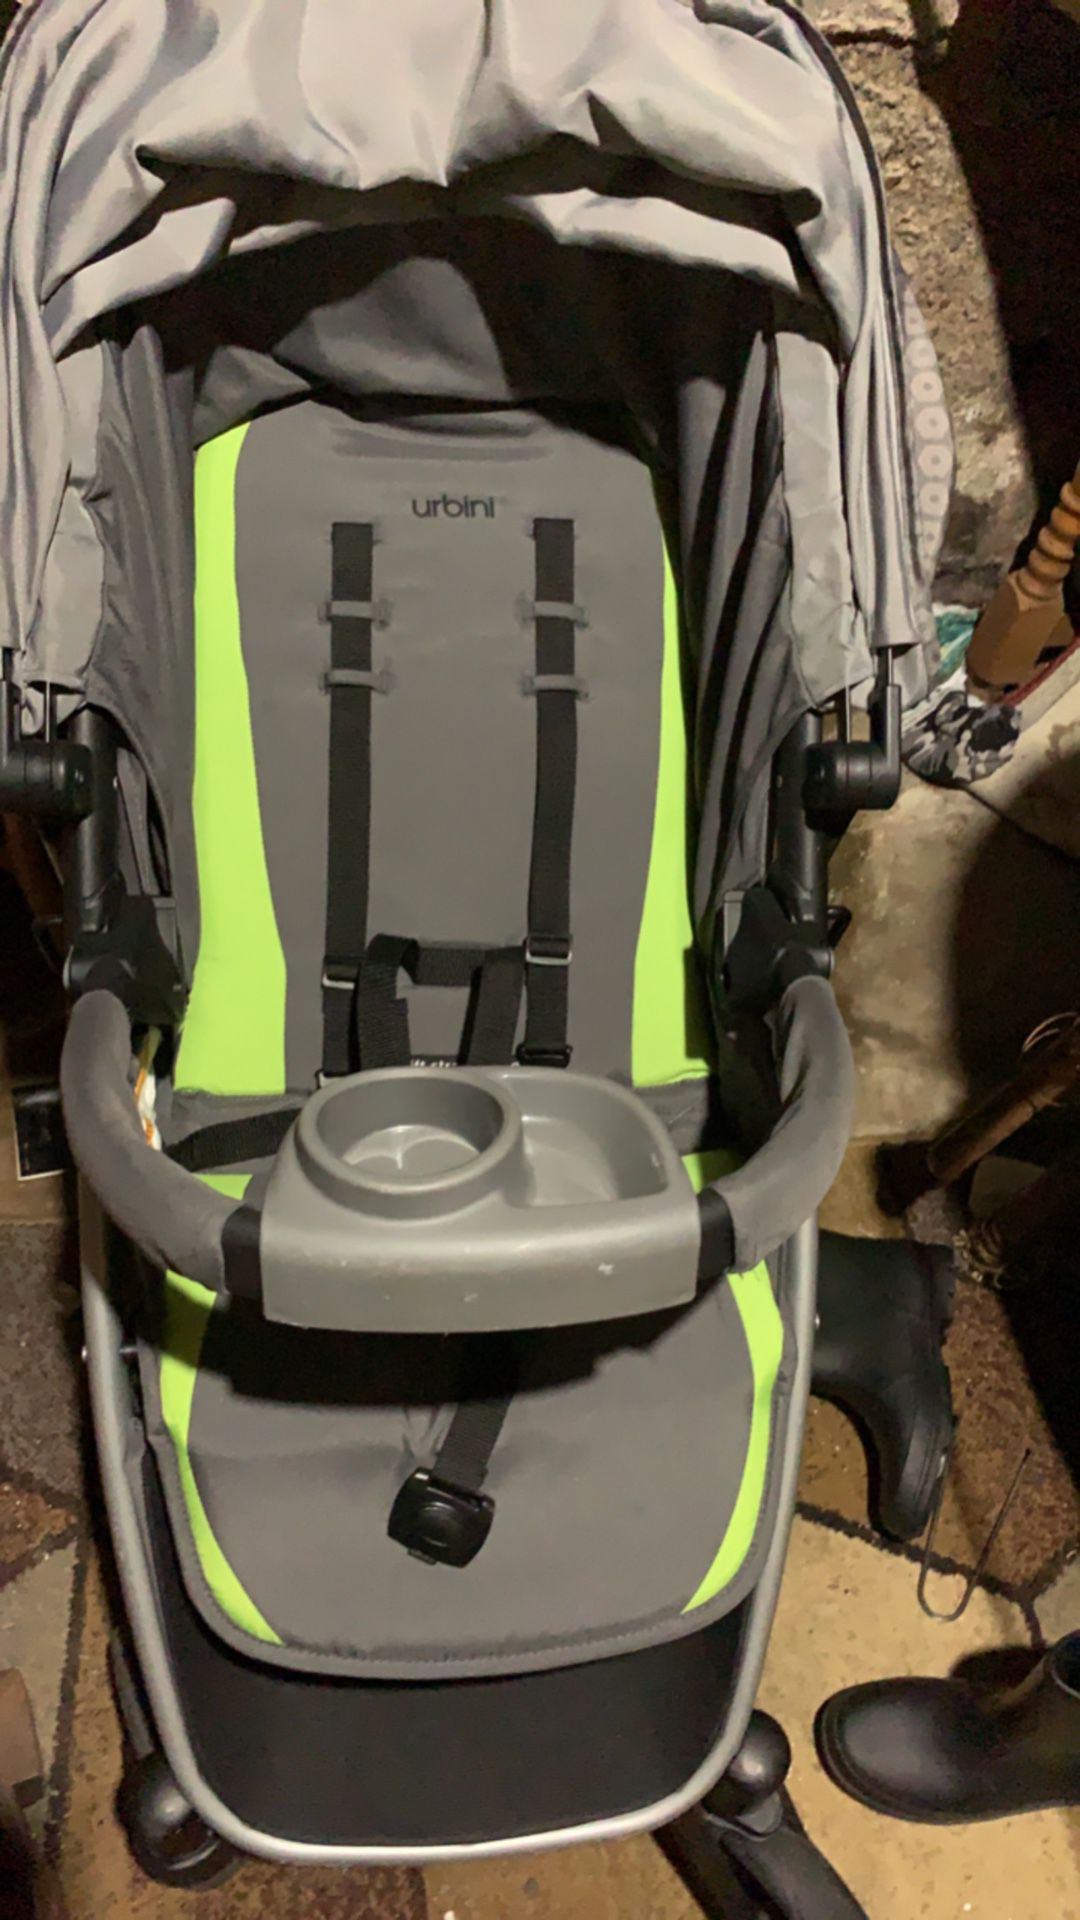 Car seat & stroller set & base